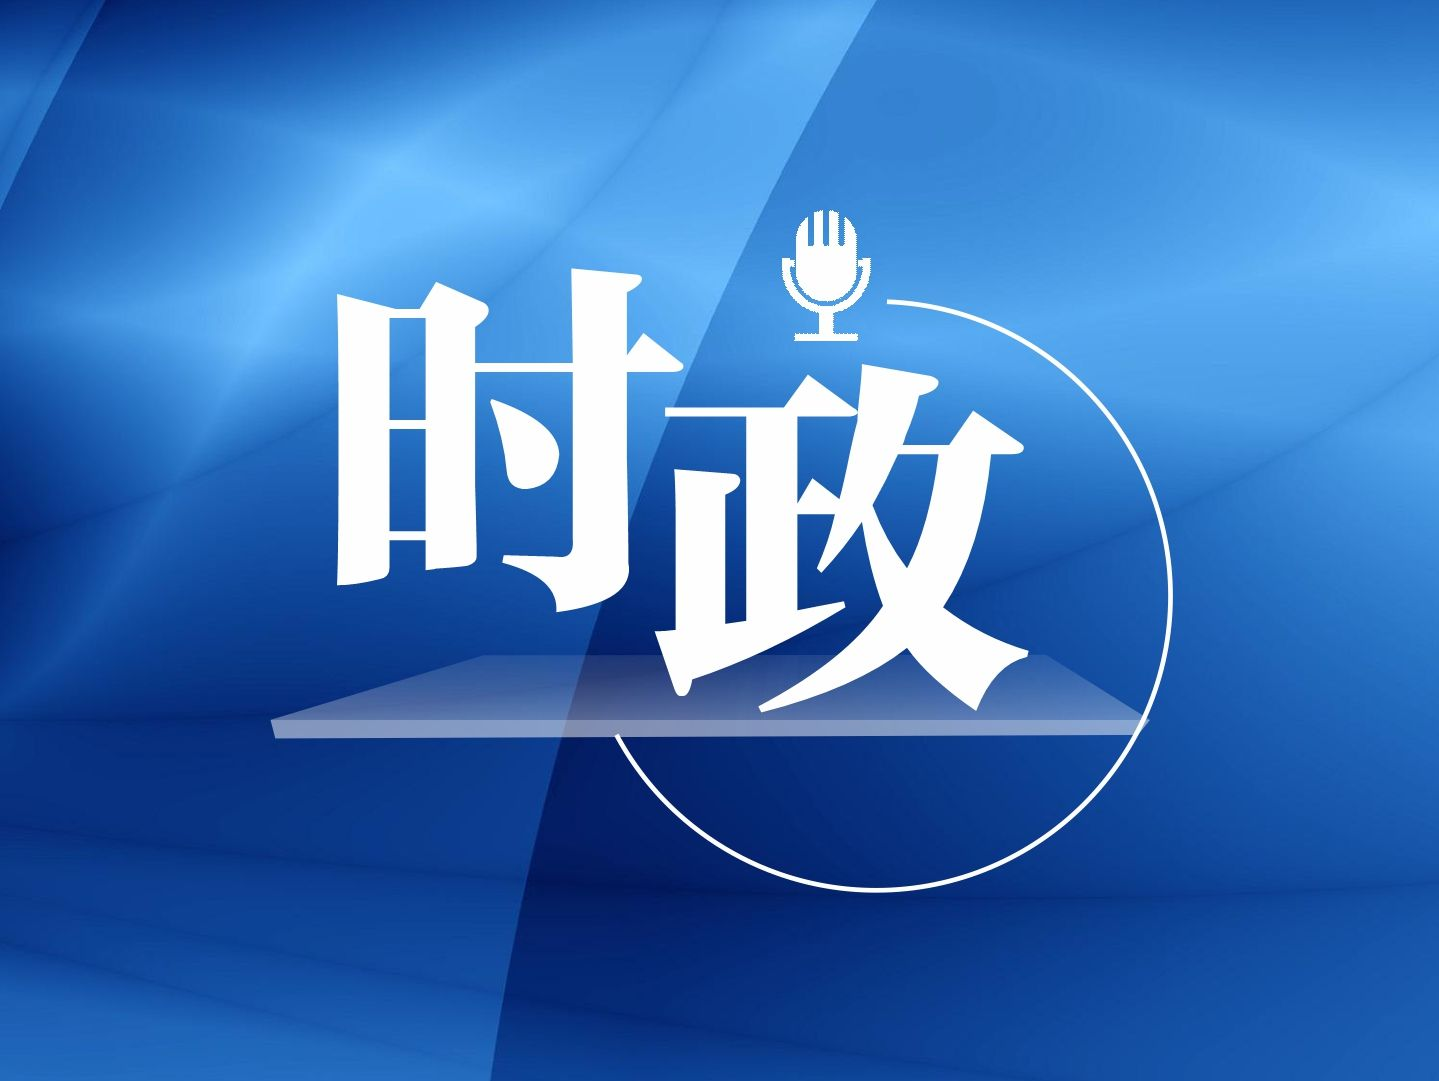 习近平对甘肃临夏州积石山县6.2级地震作出重要指示